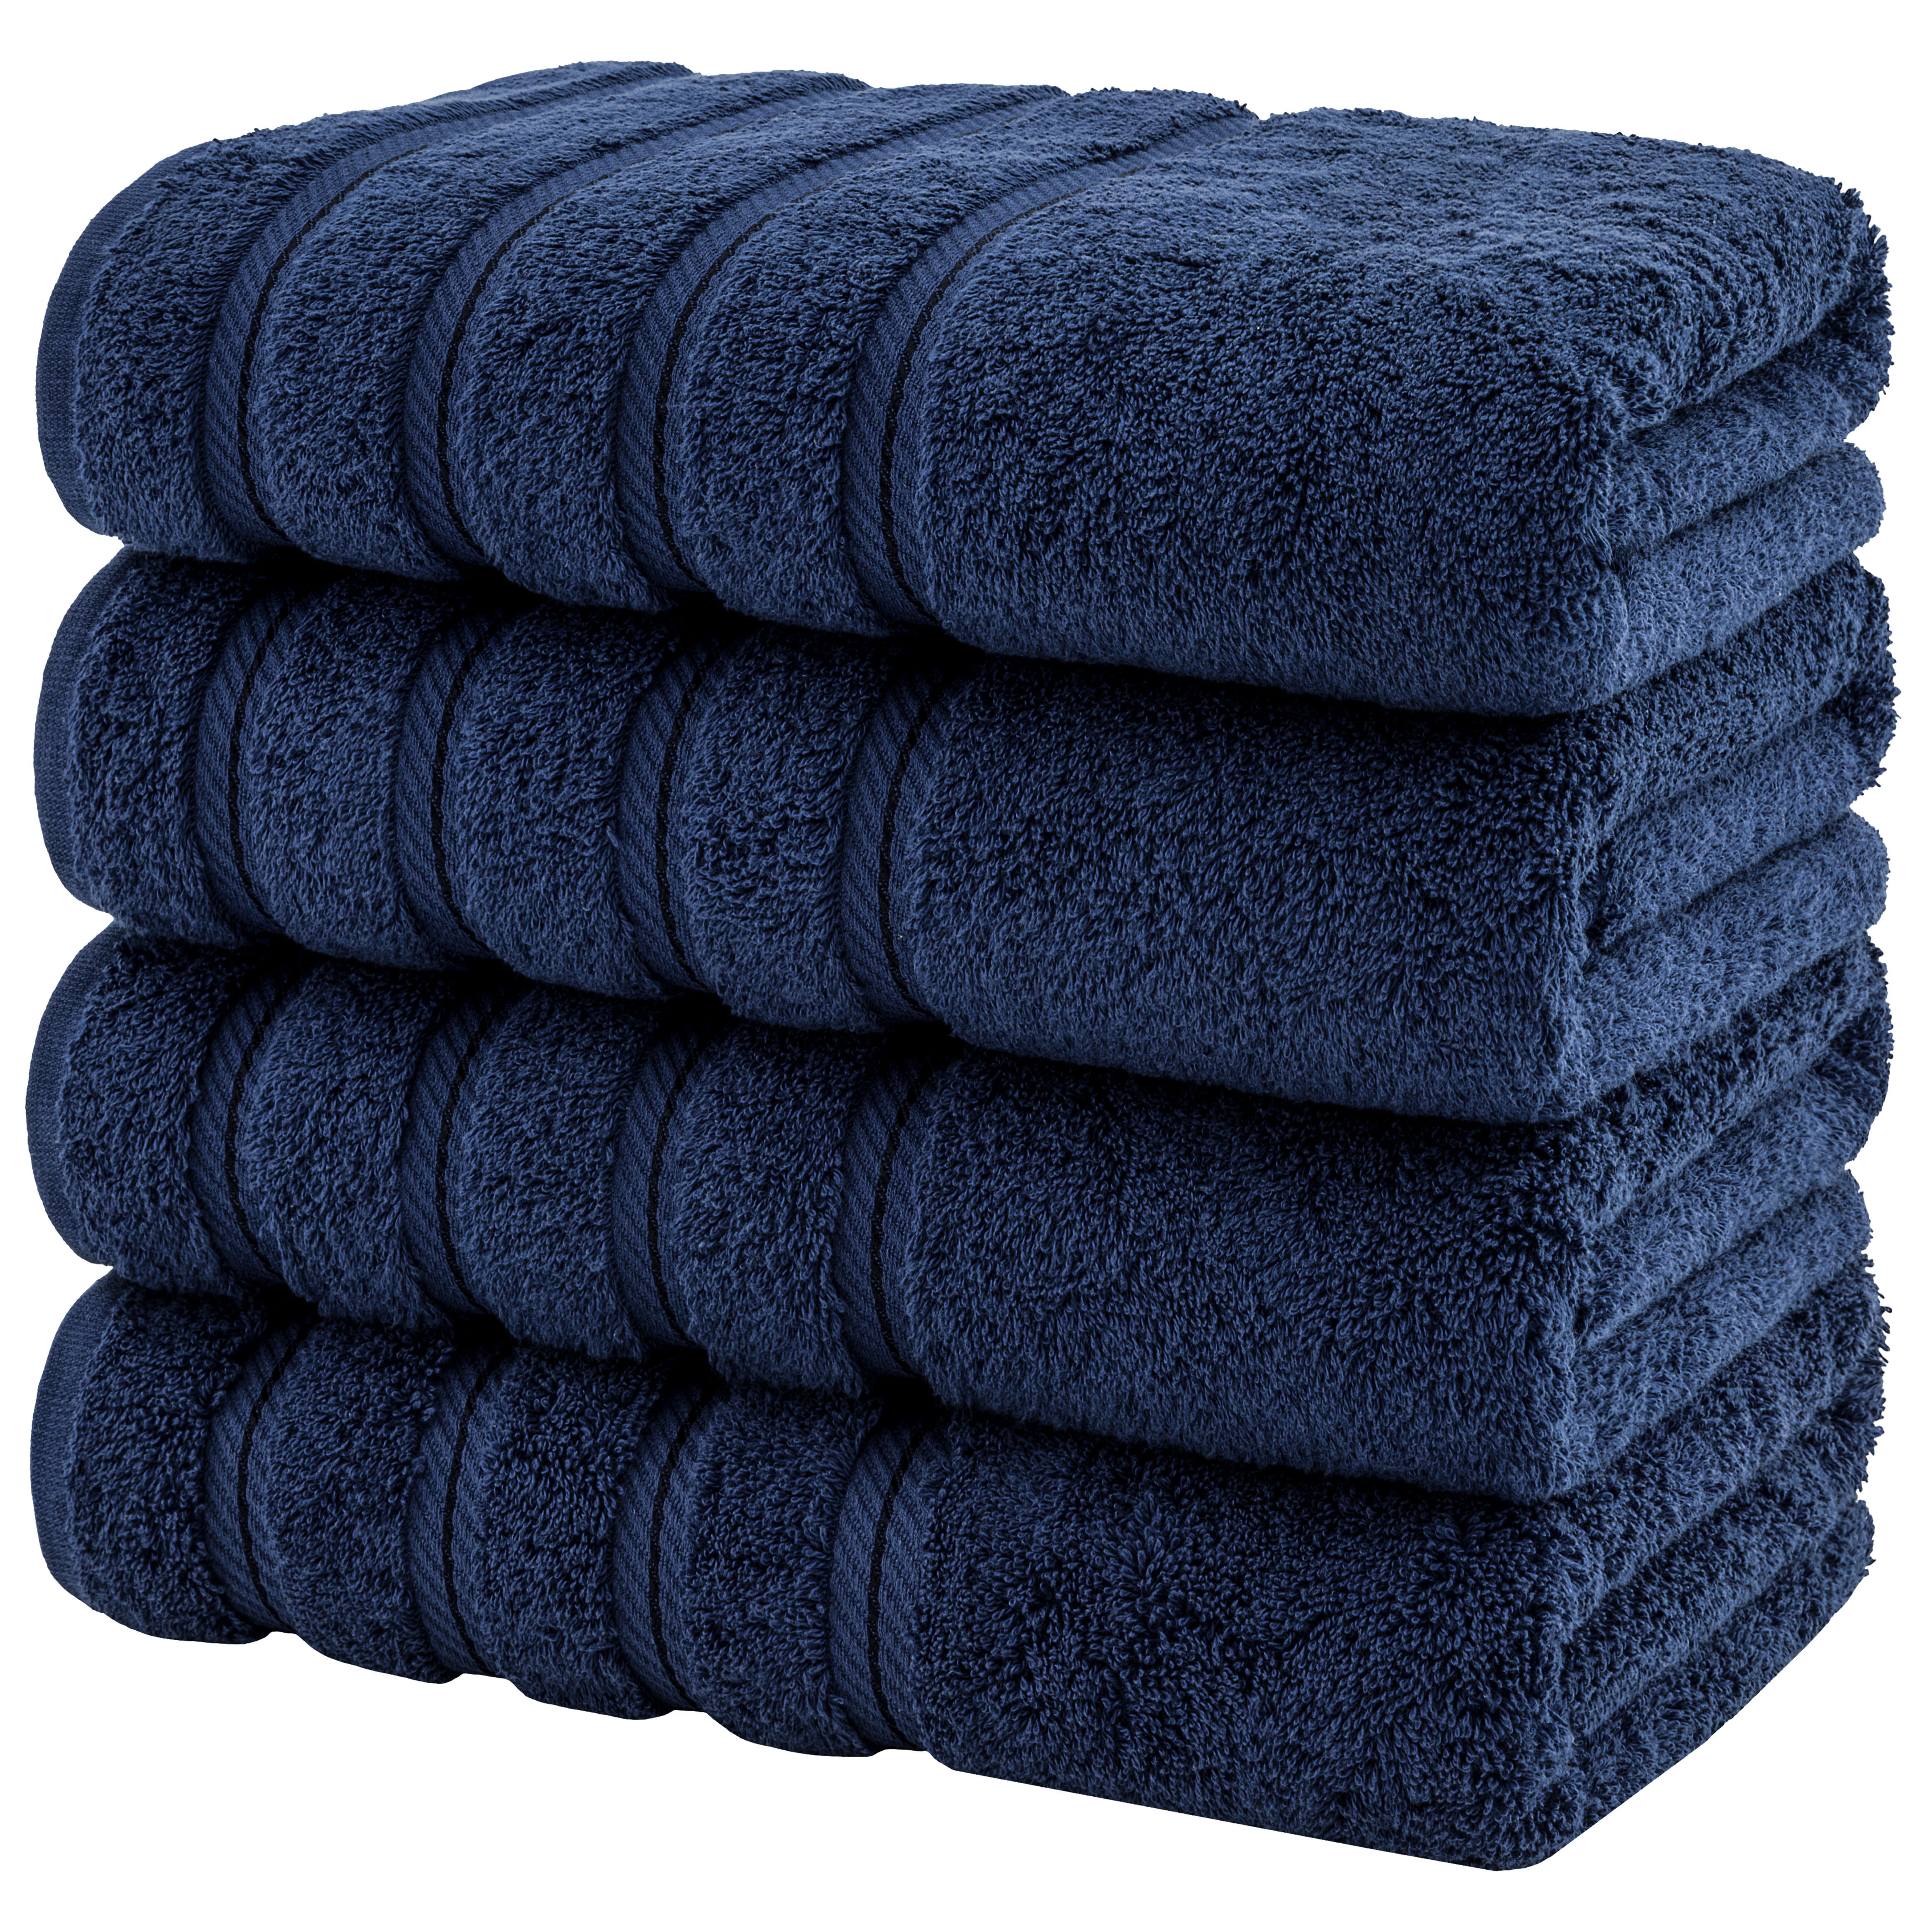 Peshkul Luxury Turkish Bath Towels 100% Cotton 27x54 | Set of 4 Soft, Fuji White